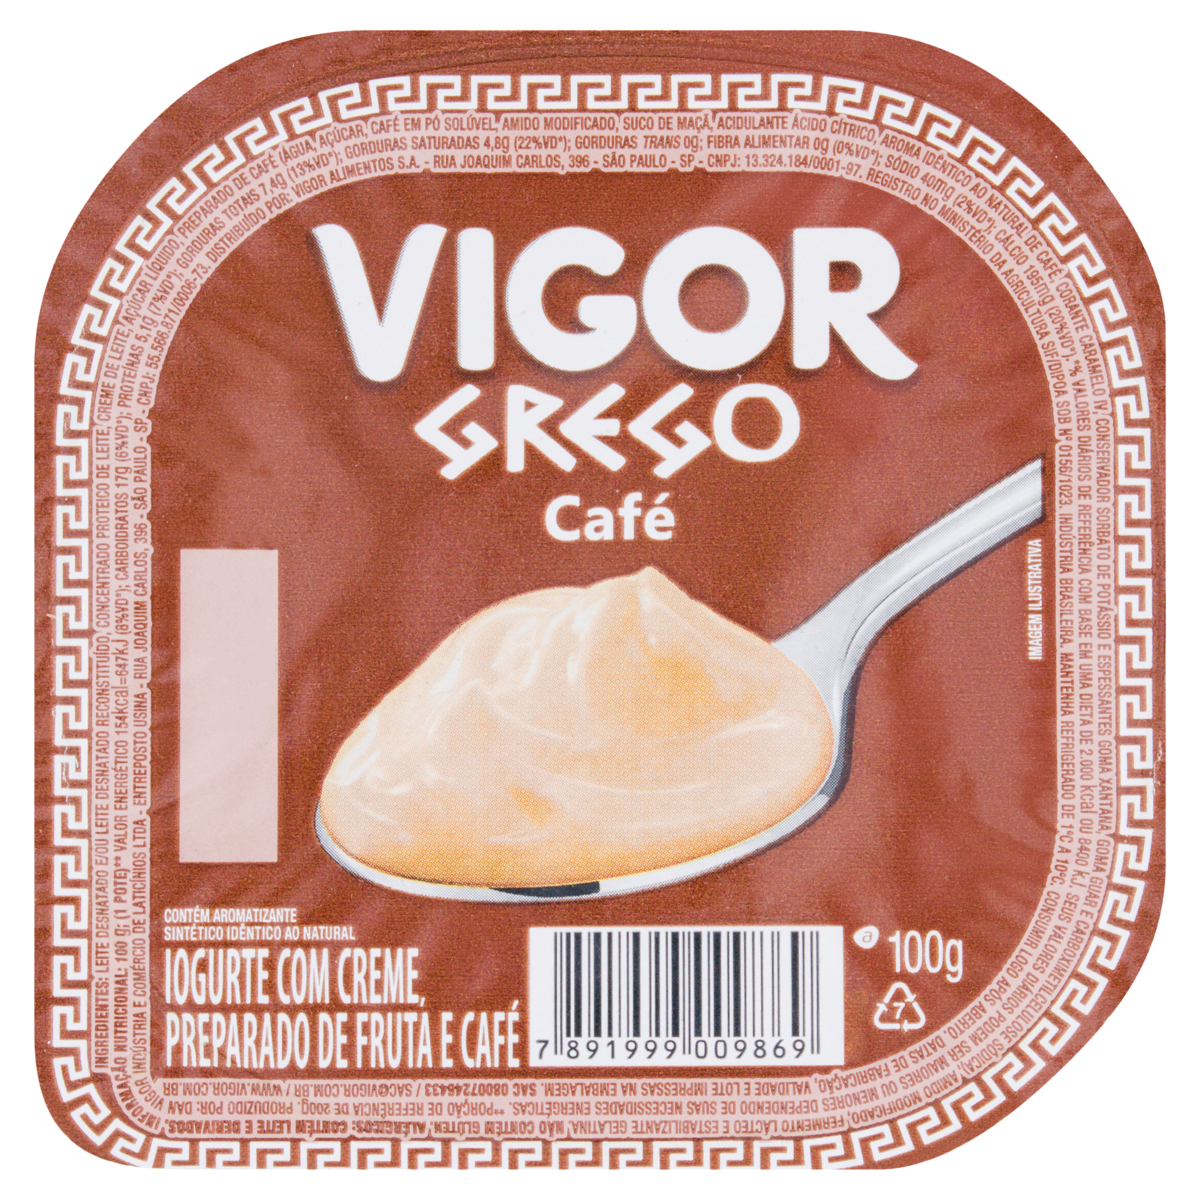 7891999009869 - IOGURTE GREGO CAFÉ VIGOR POTE 100G